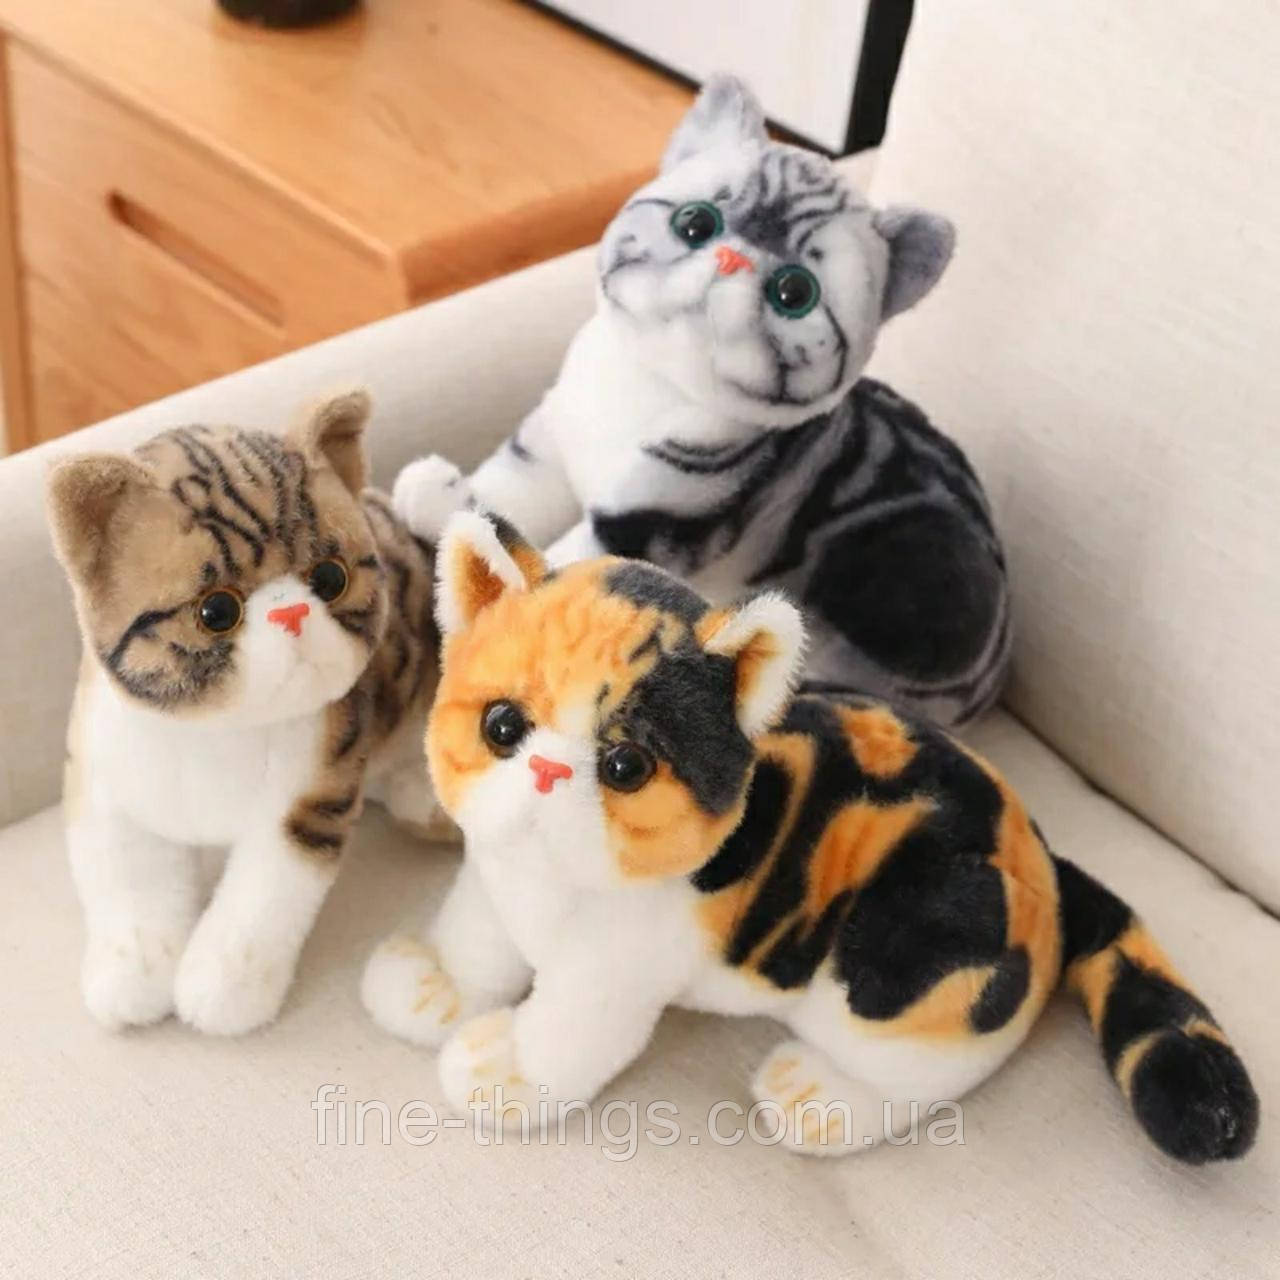 М'які іграшки кіт, м'яка іграшка реалістичний кіт екзот, реальне плюшеве кошеня,сидячий кіт 38 см